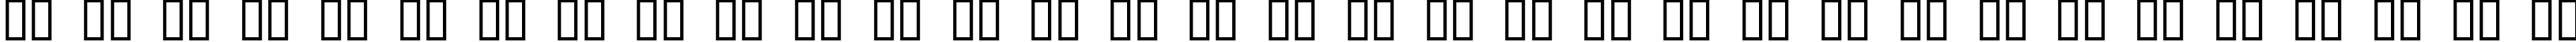 Пример написания русского алфавита шрифтом Donner